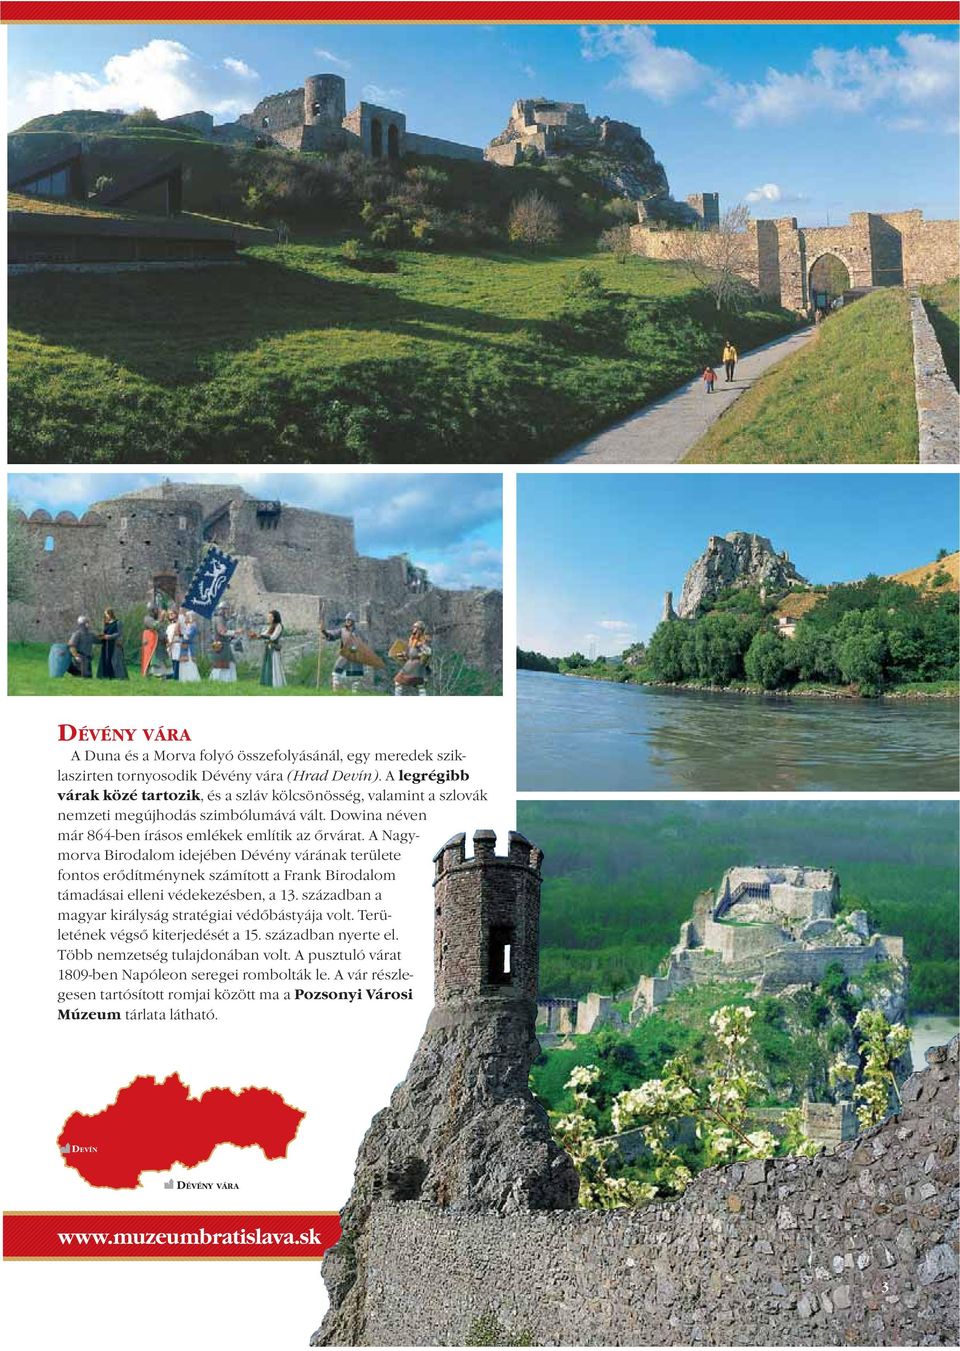 A Nagymorva Birodalom idejében Dévény várának területe fontos erődítménynek számított a Frank Birodalom támadásai elleni védekezésben, a 13.